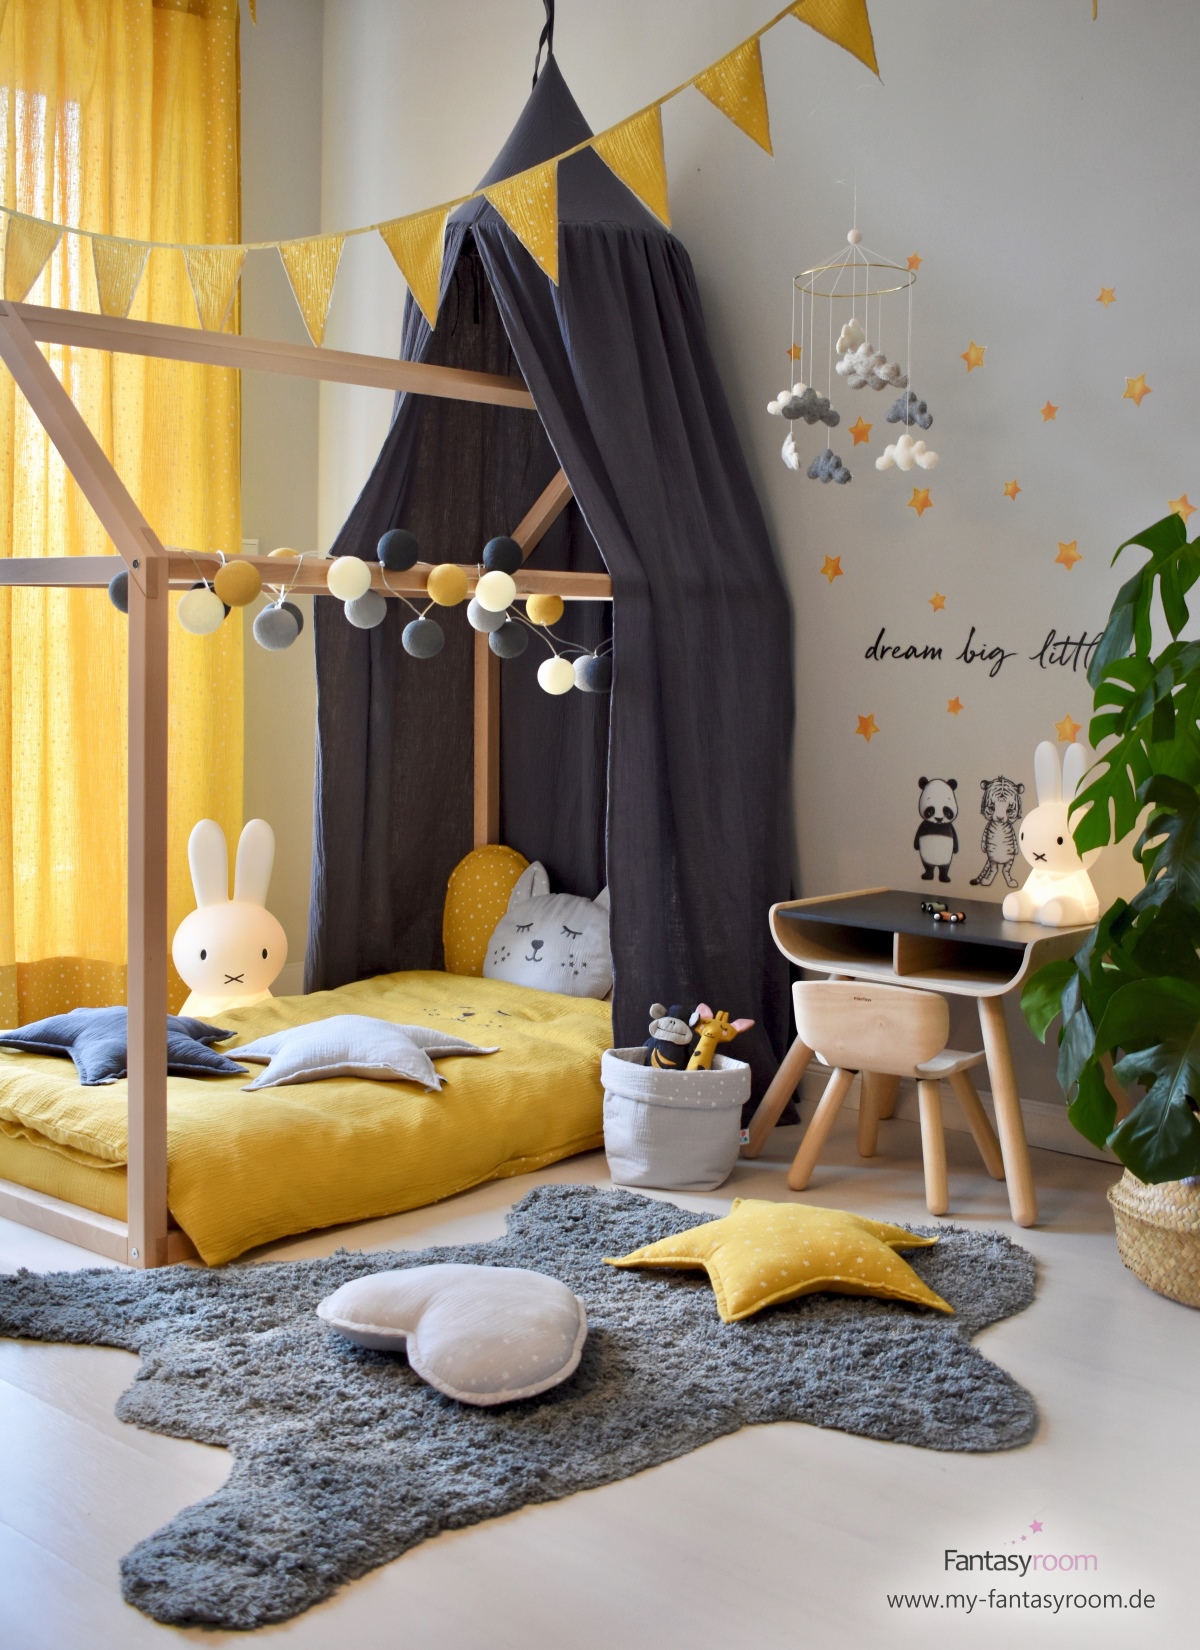 Hausbett und Kindersitzgruppe aus Naturholz im stylischen Kinderzimmer in Senfgelb und Dunkelgrau